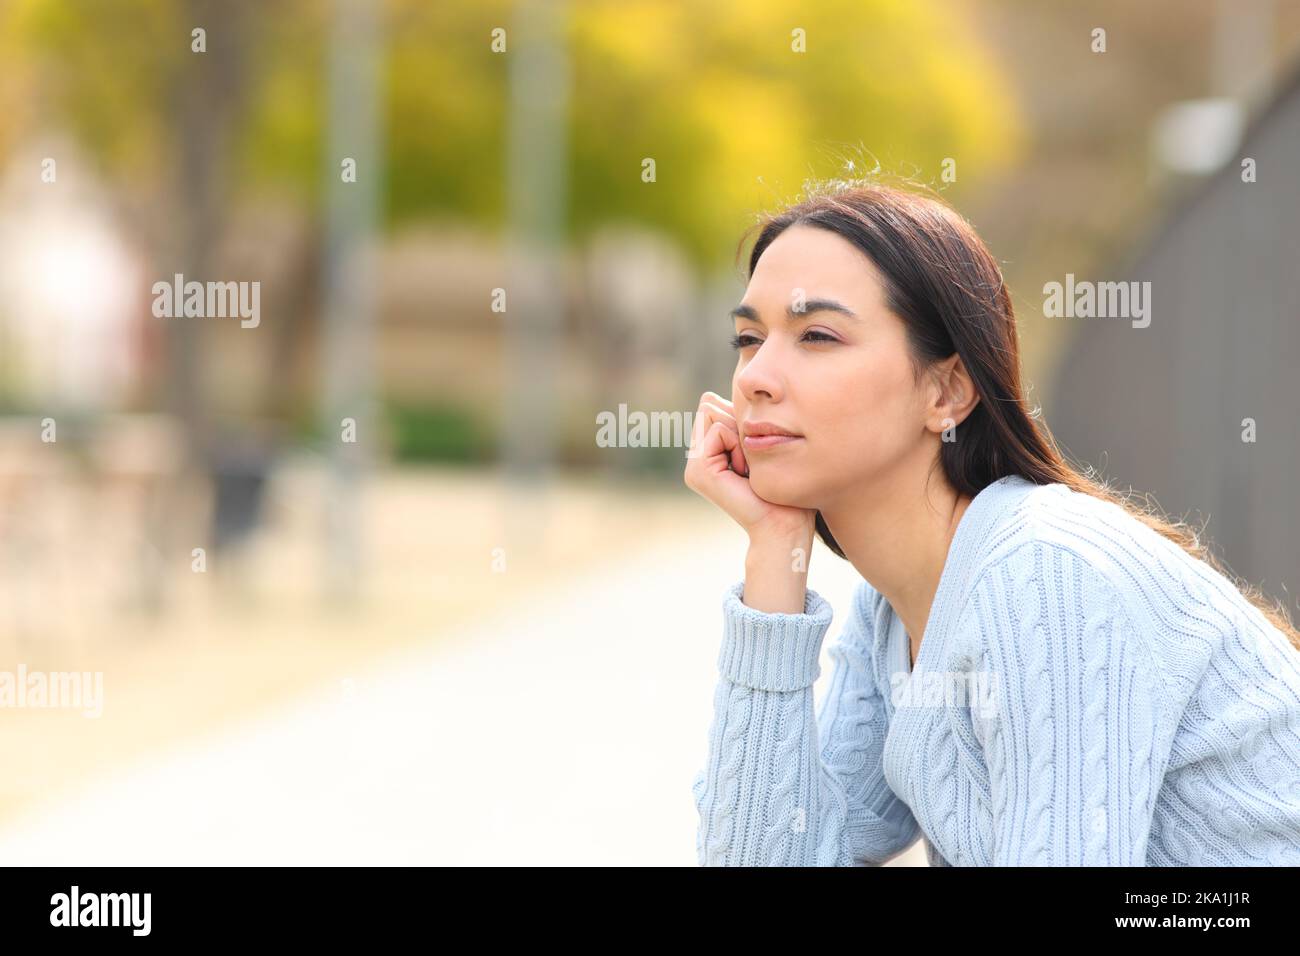 Entspannte Frau, die in einem Park die Aussicht betrachtet Stockfoto